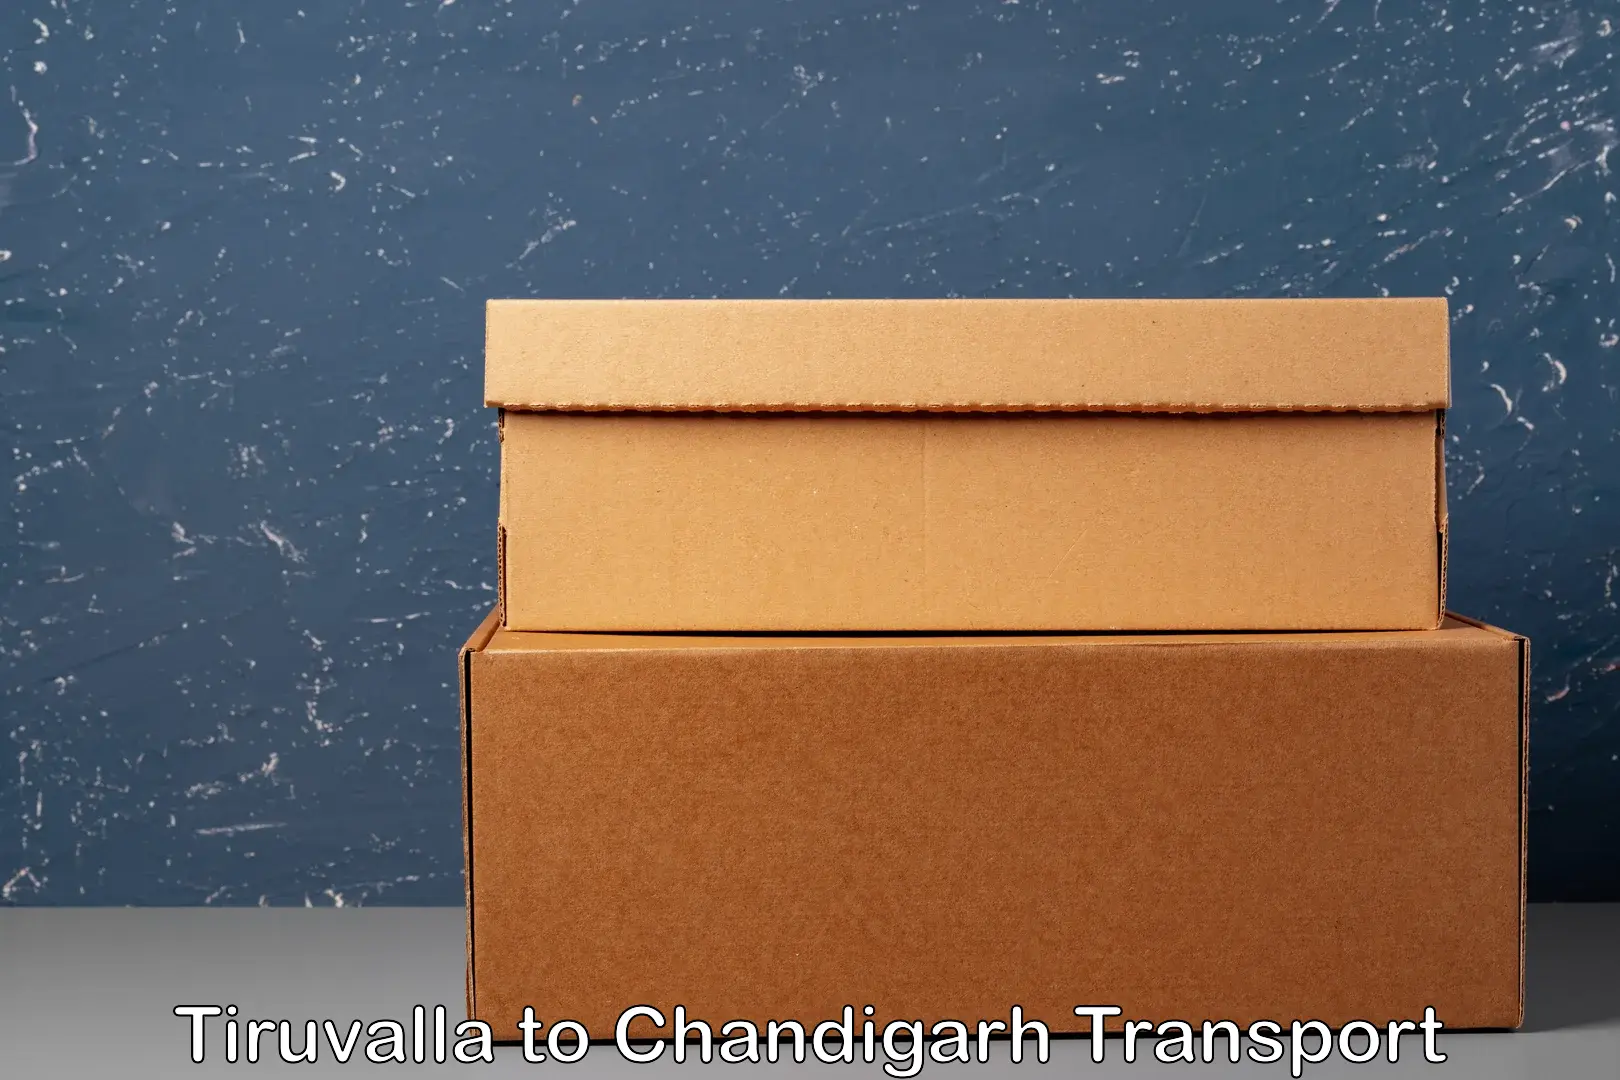 Online transport service Tiruvalla to Chandigarh